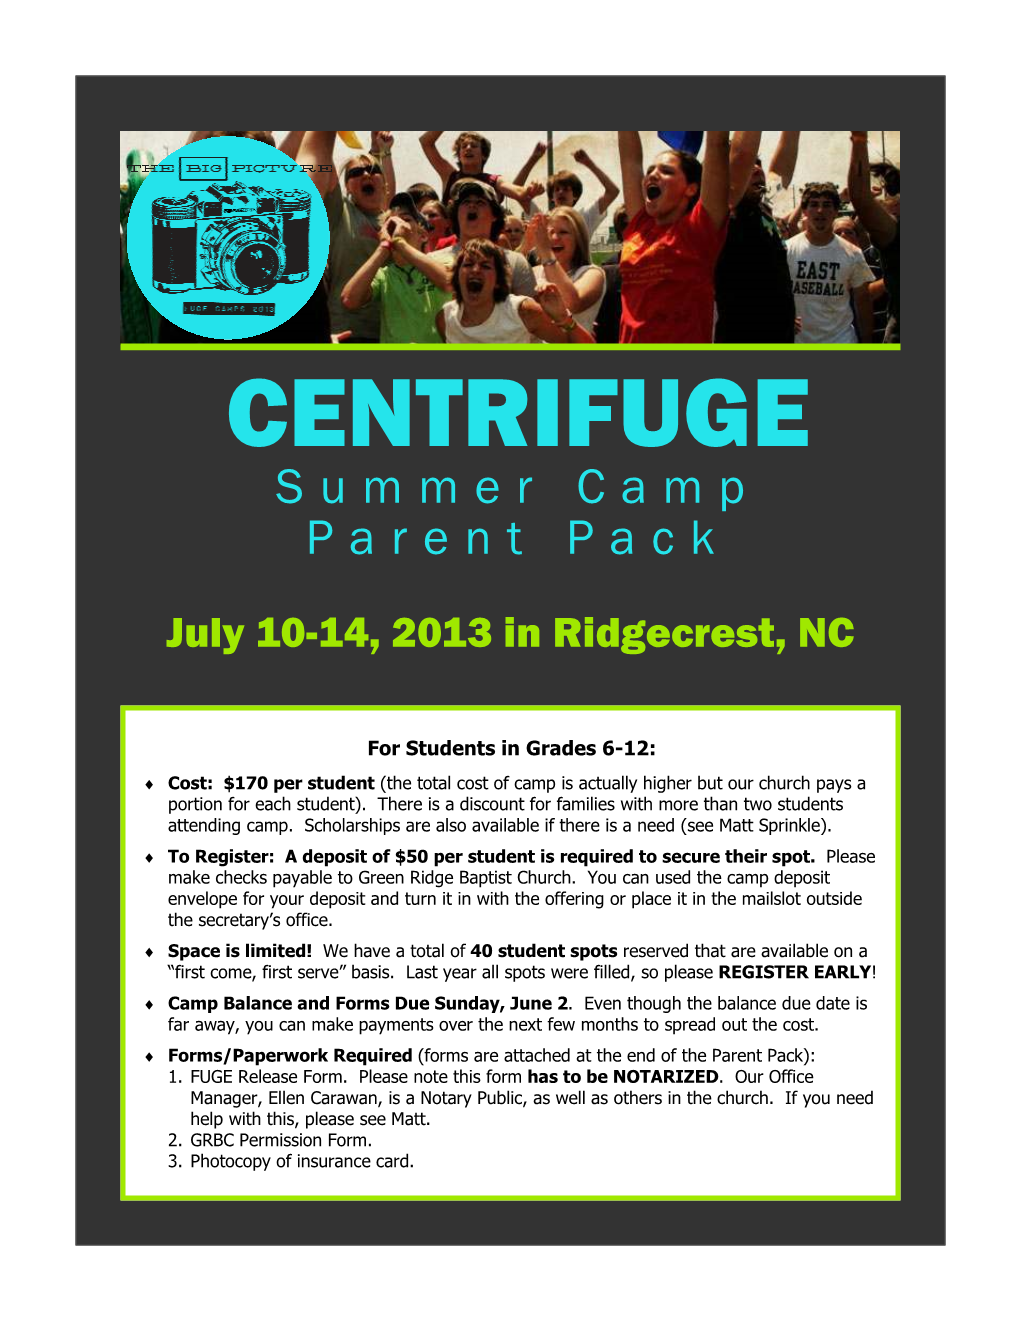 CENTRIFUGE Summer Camp Parent Pack